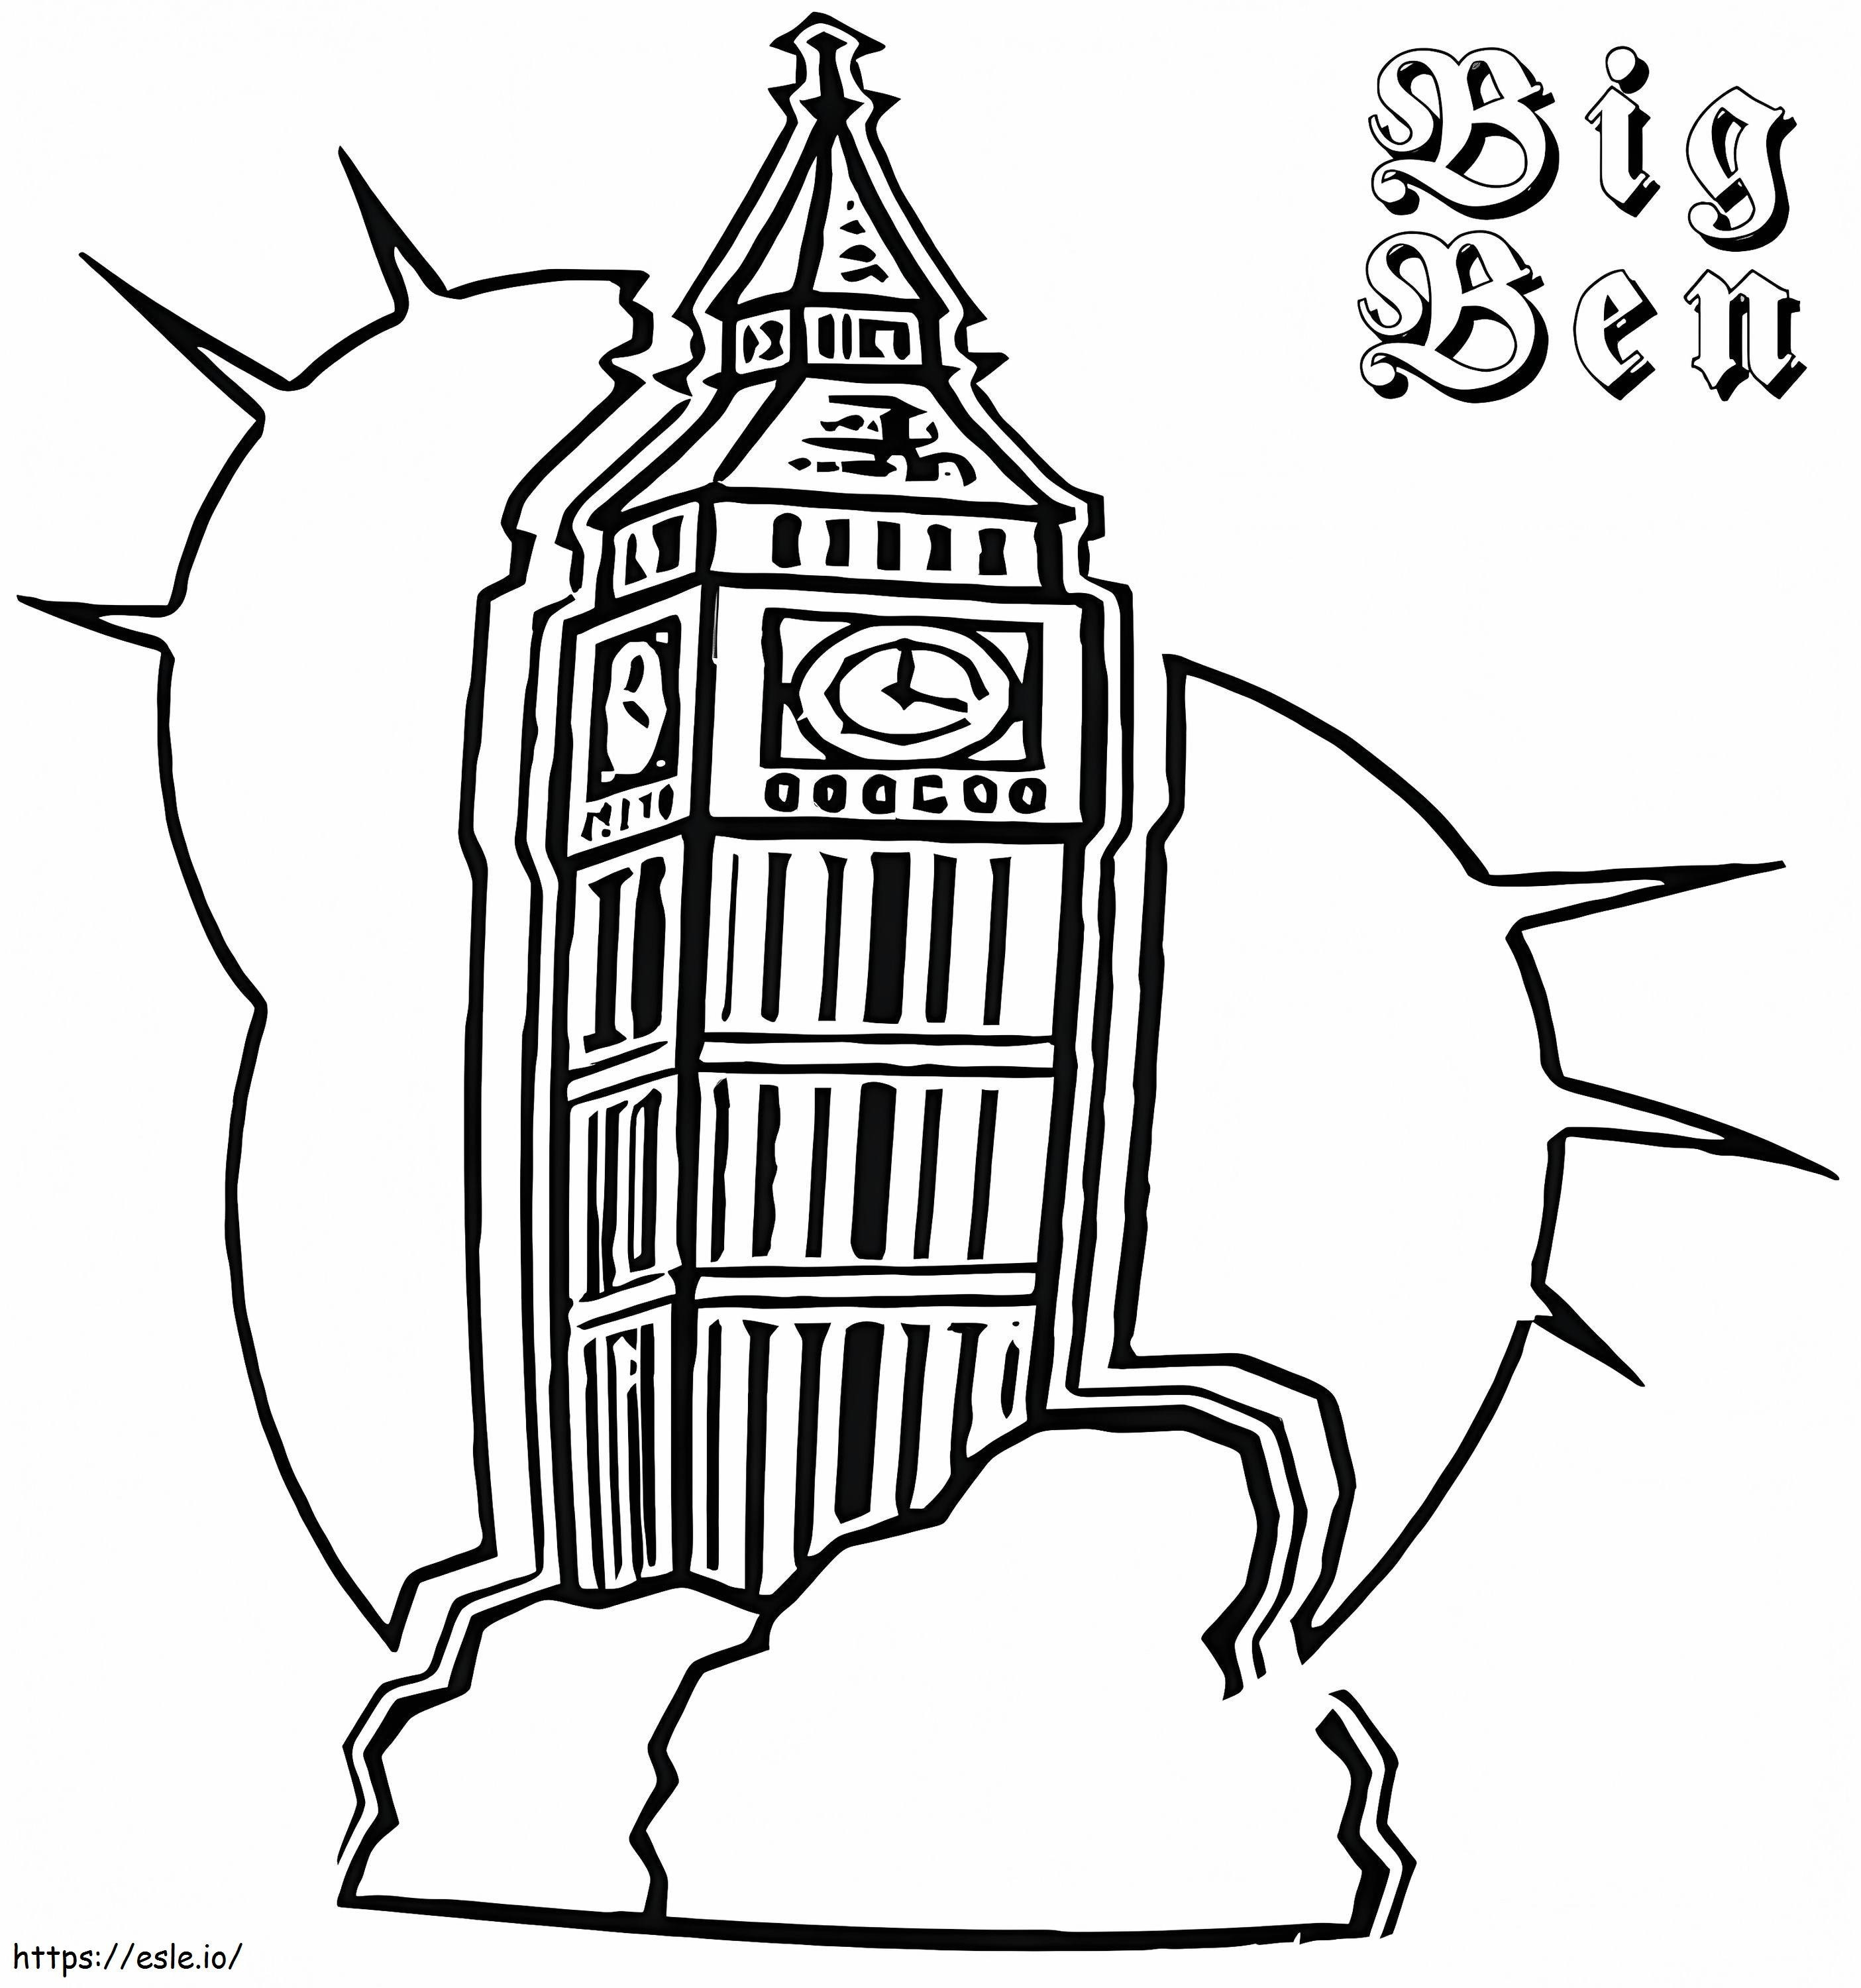 Printable Big Ben coloring page